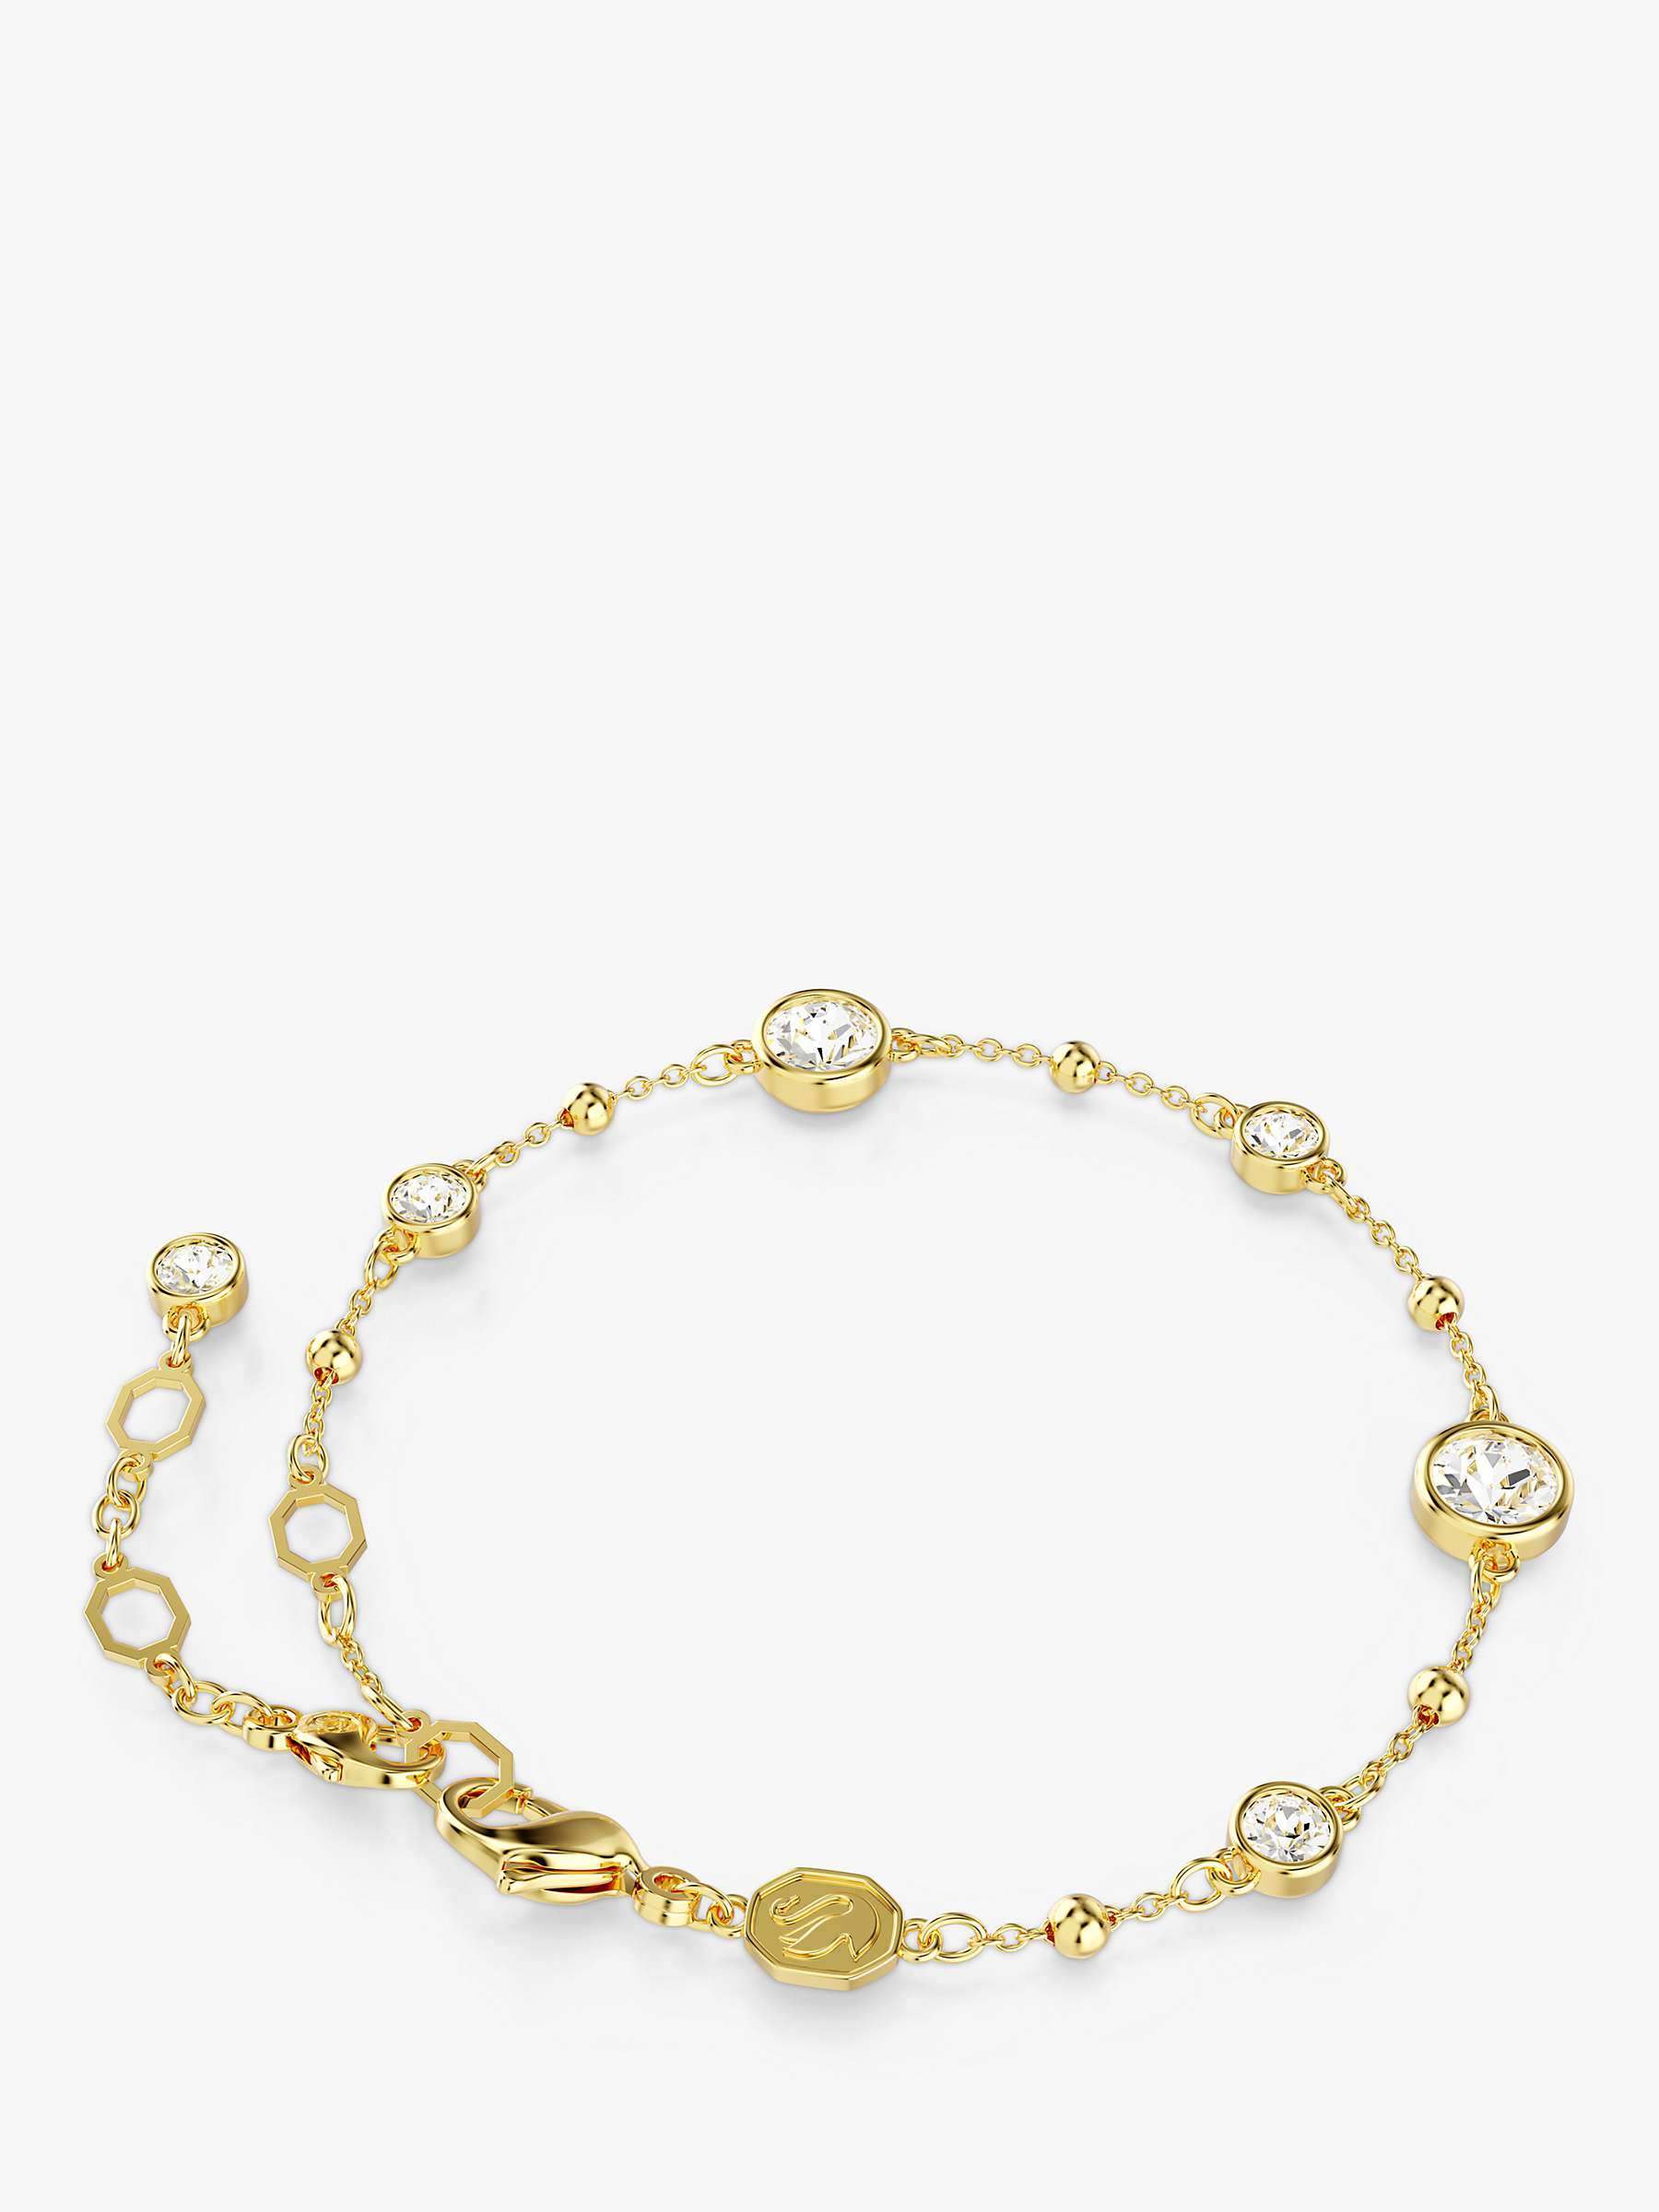 Buy Swarovski Imber Round Crystal Bracelet, Gold Online at johnlewis.com